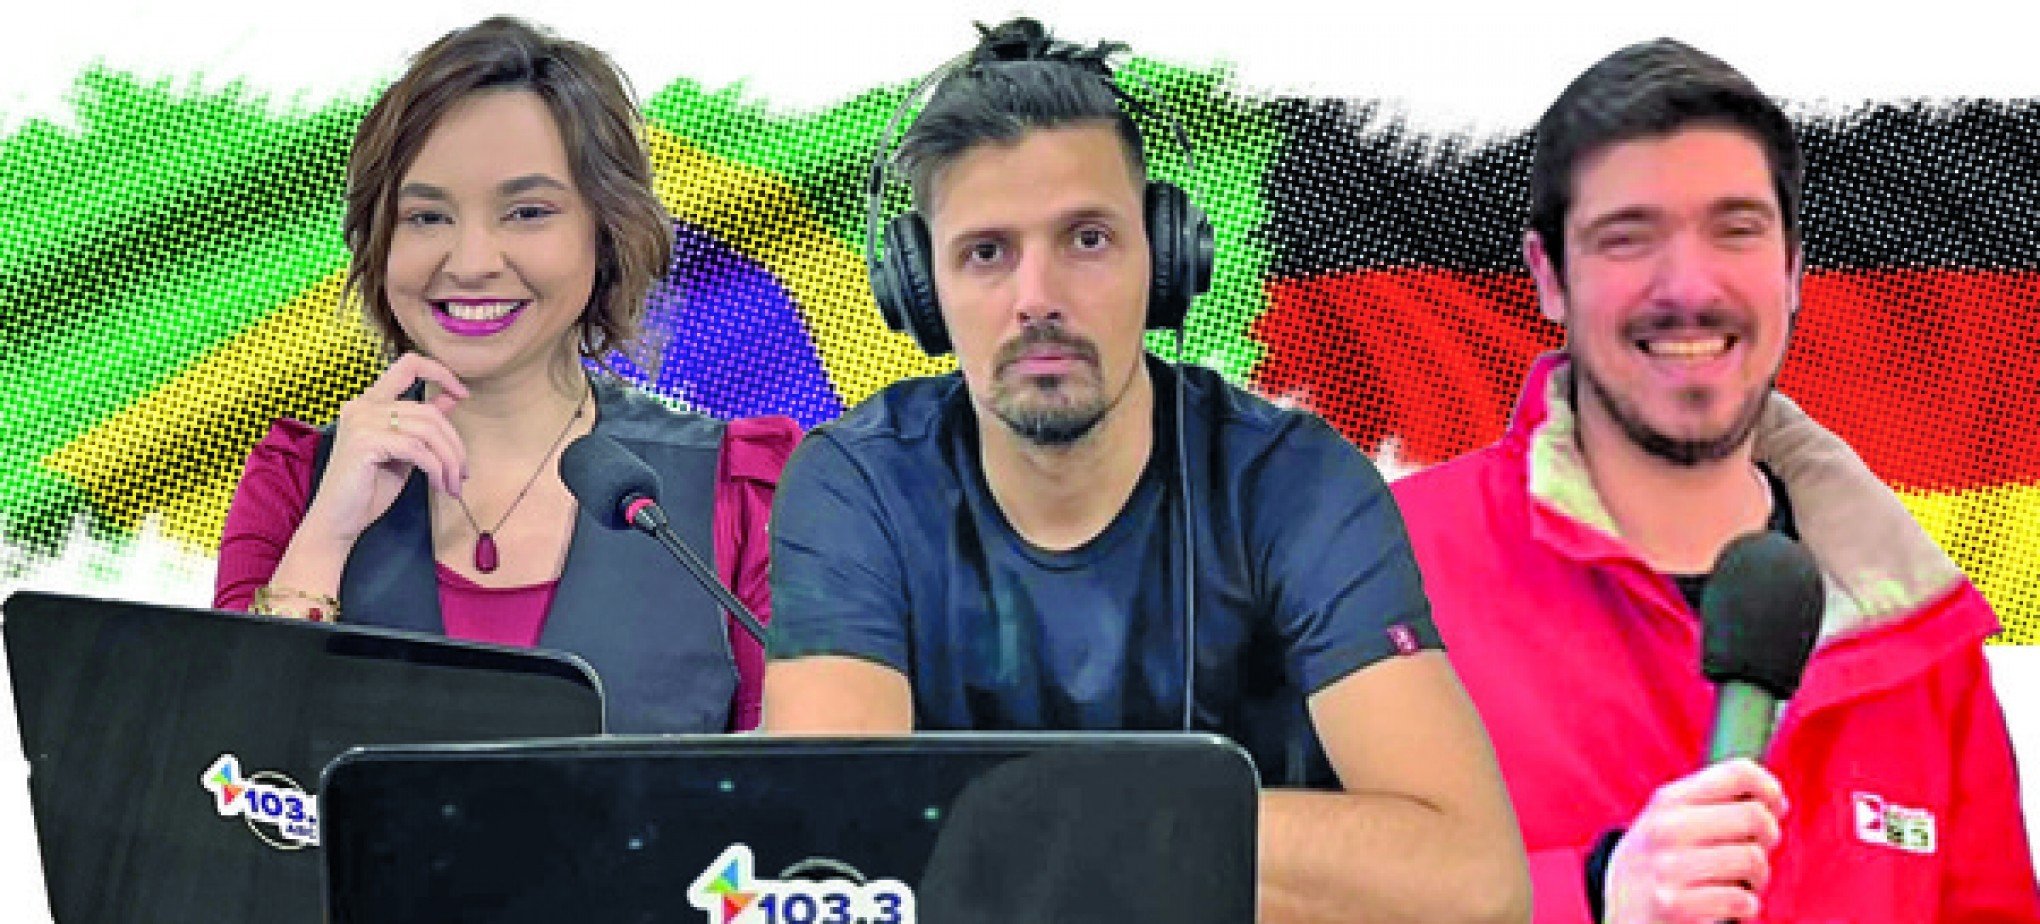 Rádio ABC 103.3 coloca no ar o Conexões Brasil-Alemanha